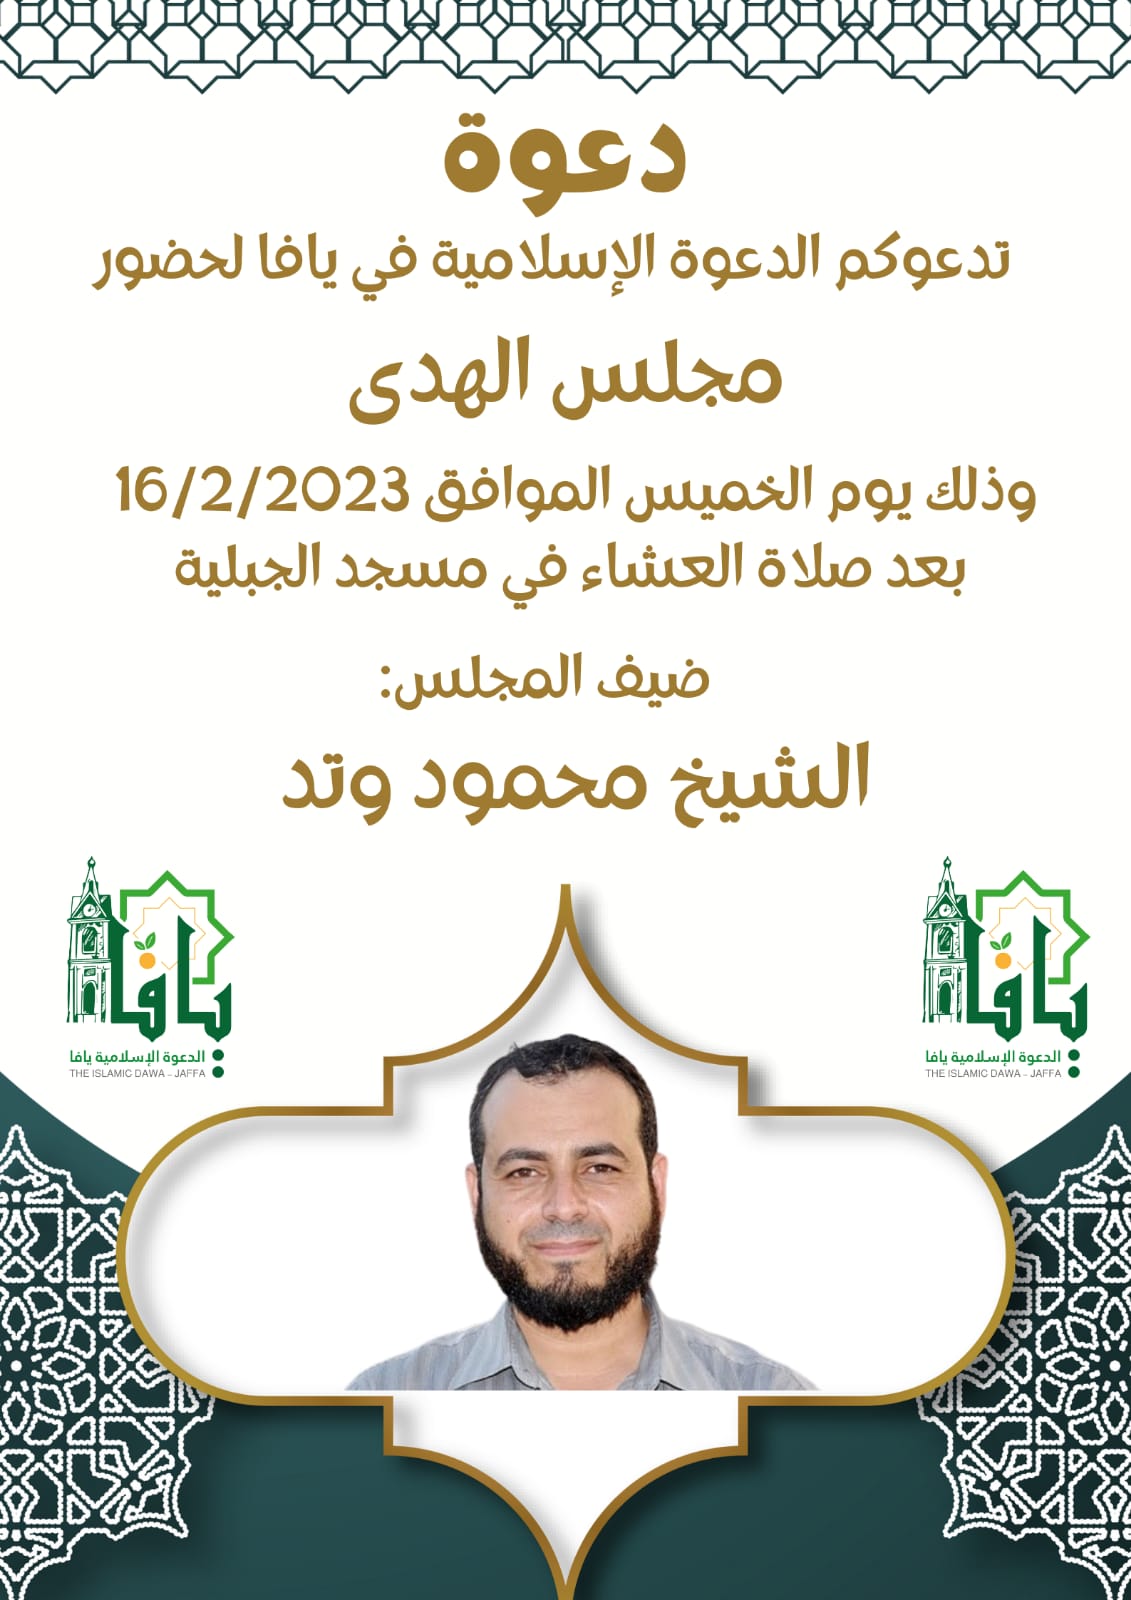  الخميس: دعوة لحضور مجلس الهدى في مسجد الجبلية 